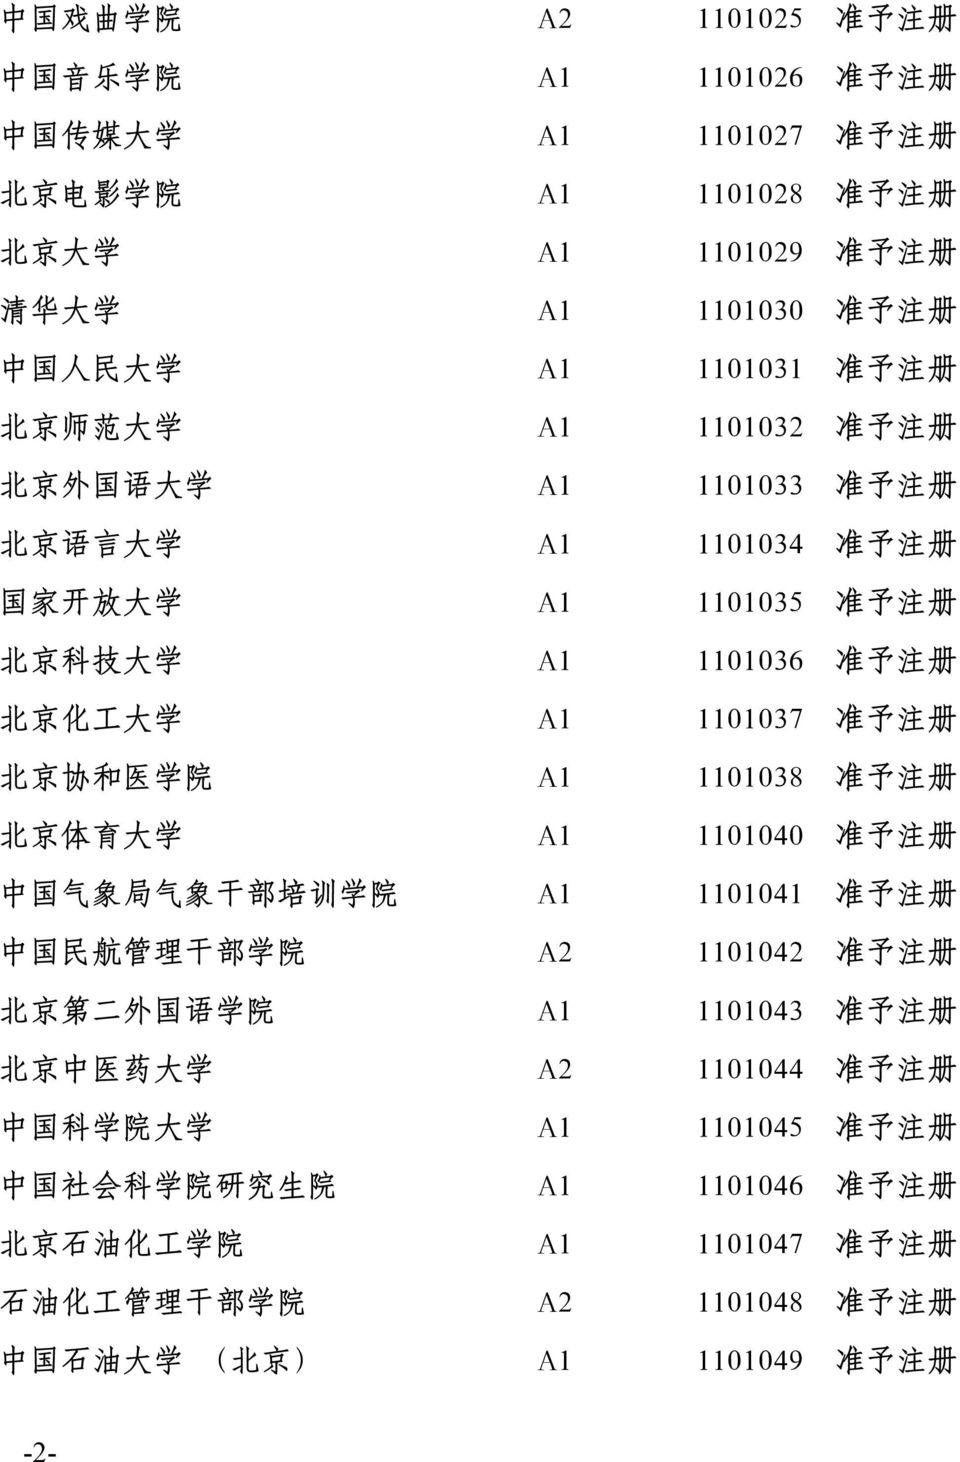 注 册 北 京 协 和 医 学 院 A1 1101038 准 予 注 册 北 京 体 育 大 学 A1 1101040 准 予 注 册 中 国 气 象 局 气 象 干 部 培 训 学 院 A1 1101041 准 予 注 册 中 国 民 航 管 理 干 部 学 院 A2 1101042 准 予 注 册 北 京 第 二 外 国 语 学 院 A1 1101043 准 予 注 册 北 京 中 医 药